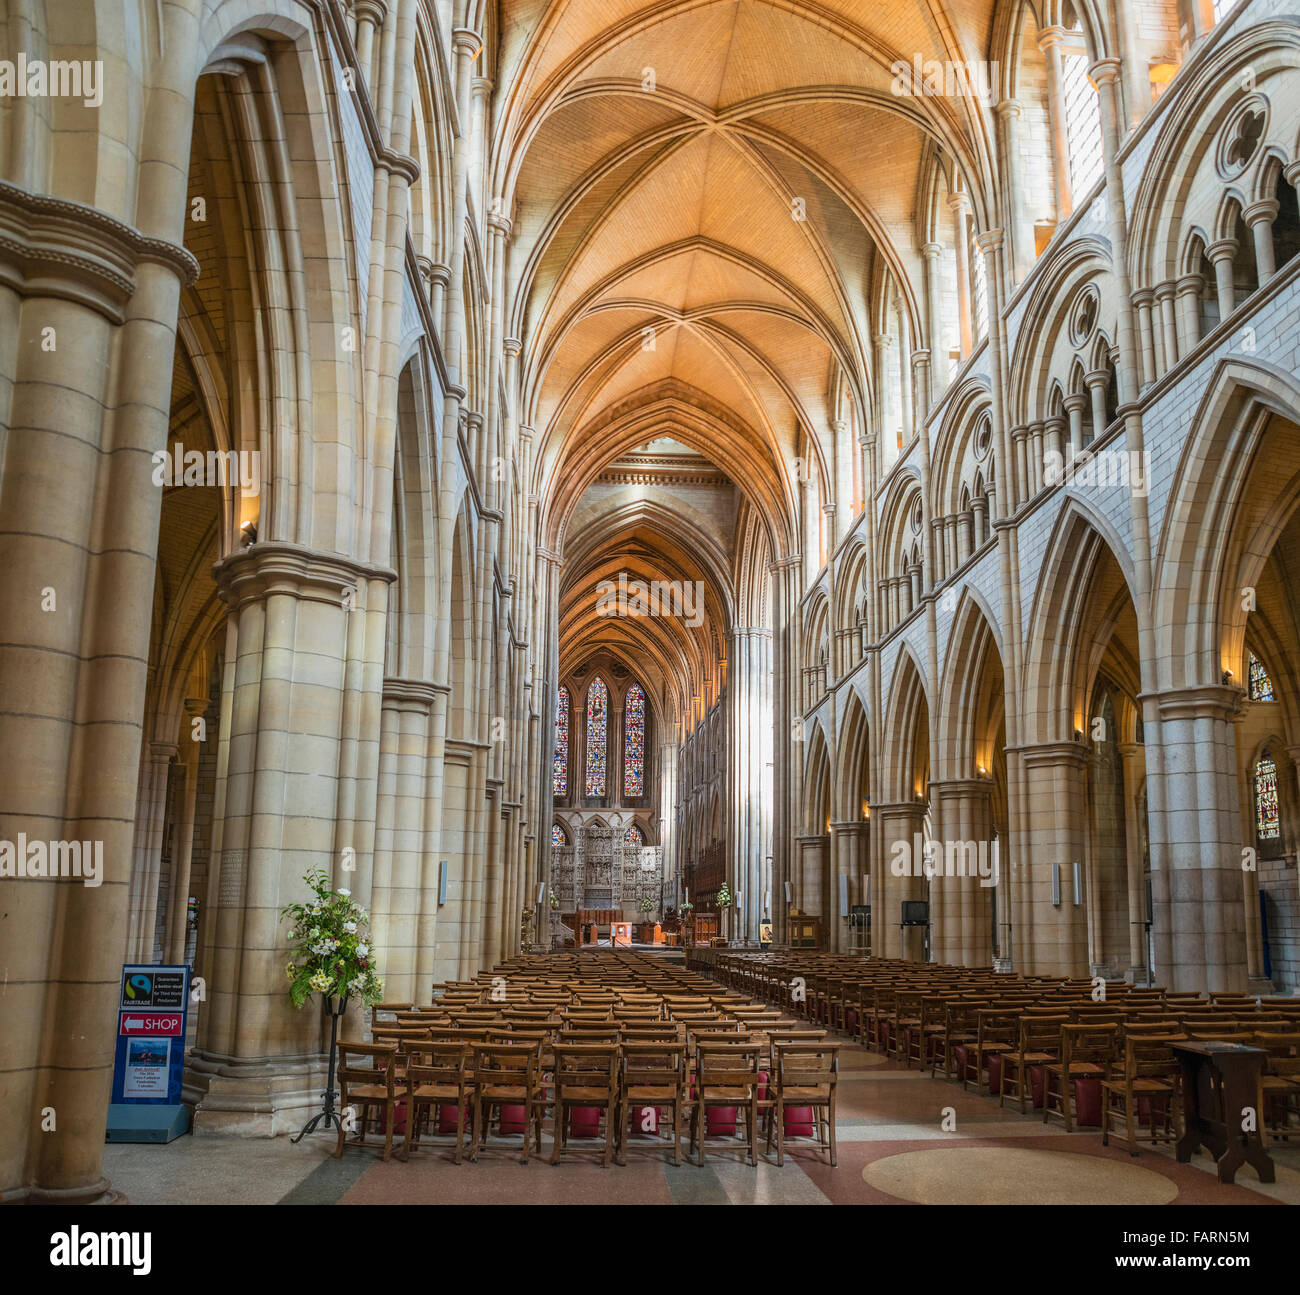 Intérieur de la cathédrale de Truro, Cornwall, England, UK Banque D'Images